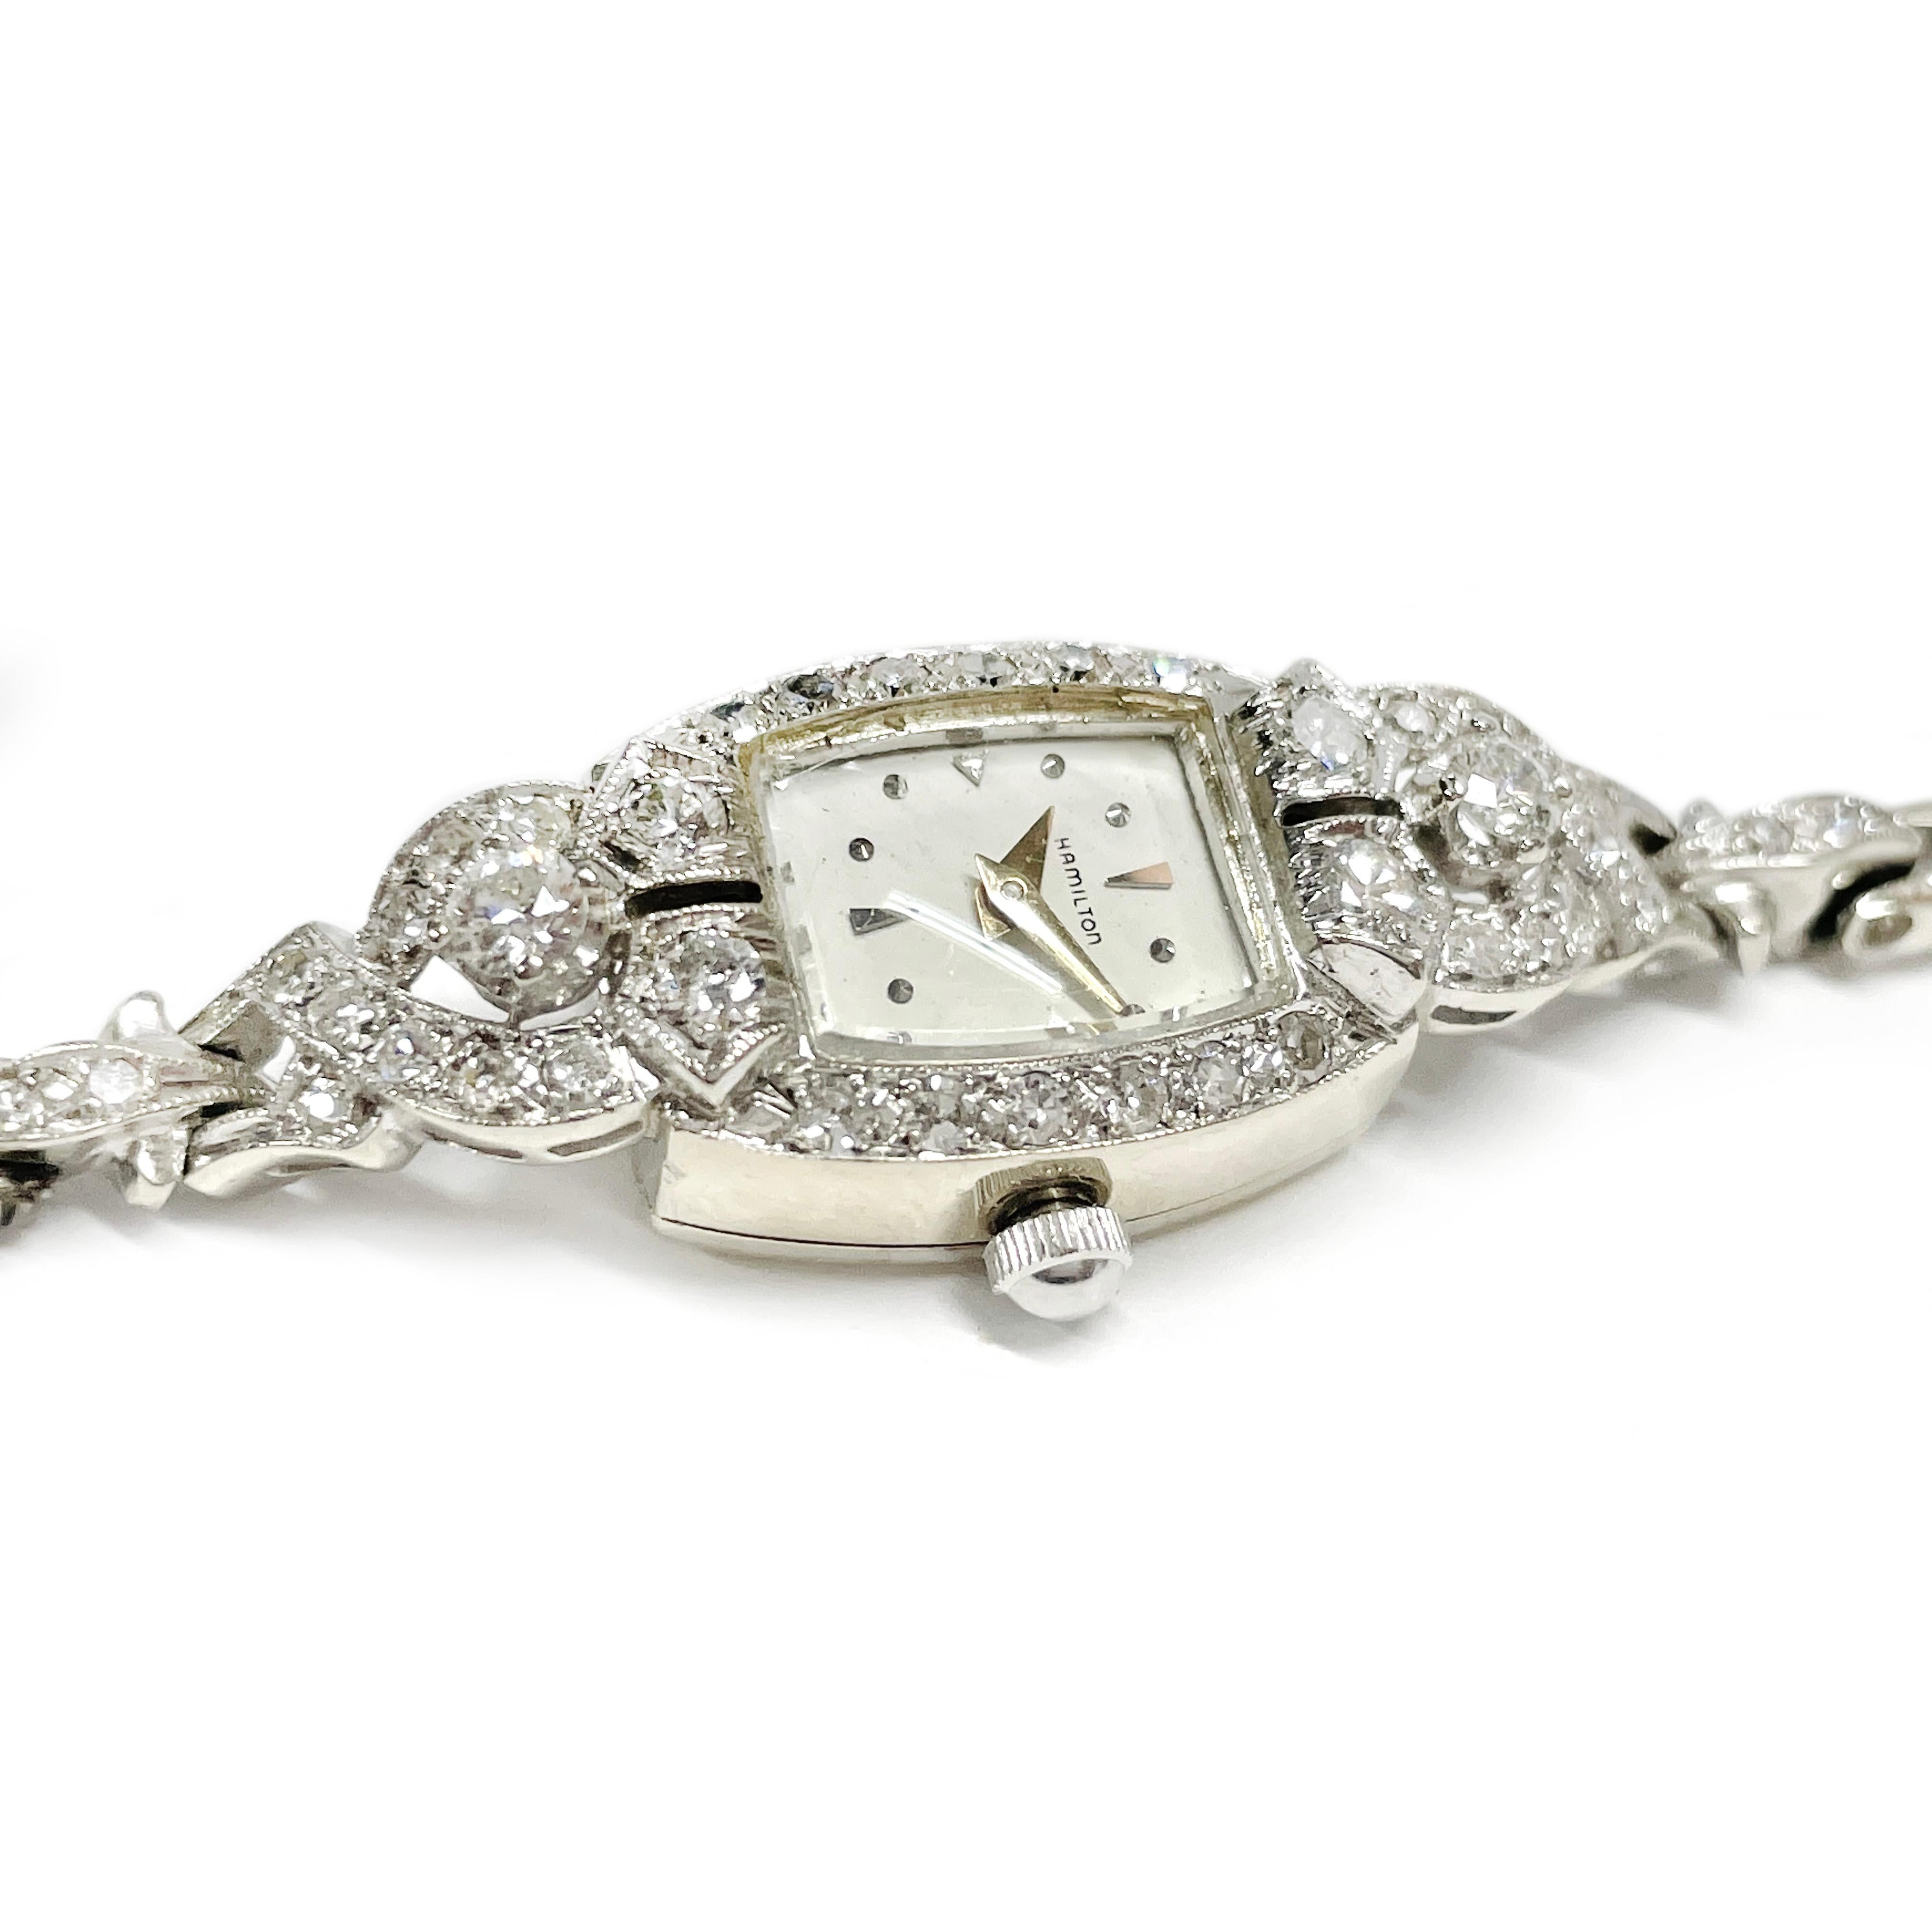 Vintage Art of Vintage Hamilton Ladies White Gold Diamond Bracelet Watch. Le cadran à face rectangulaire arrondie est encadré de diamants ronds et d'aiguilles des heures et des minutes en or jaune. Cette charmante montre pour dames brille de